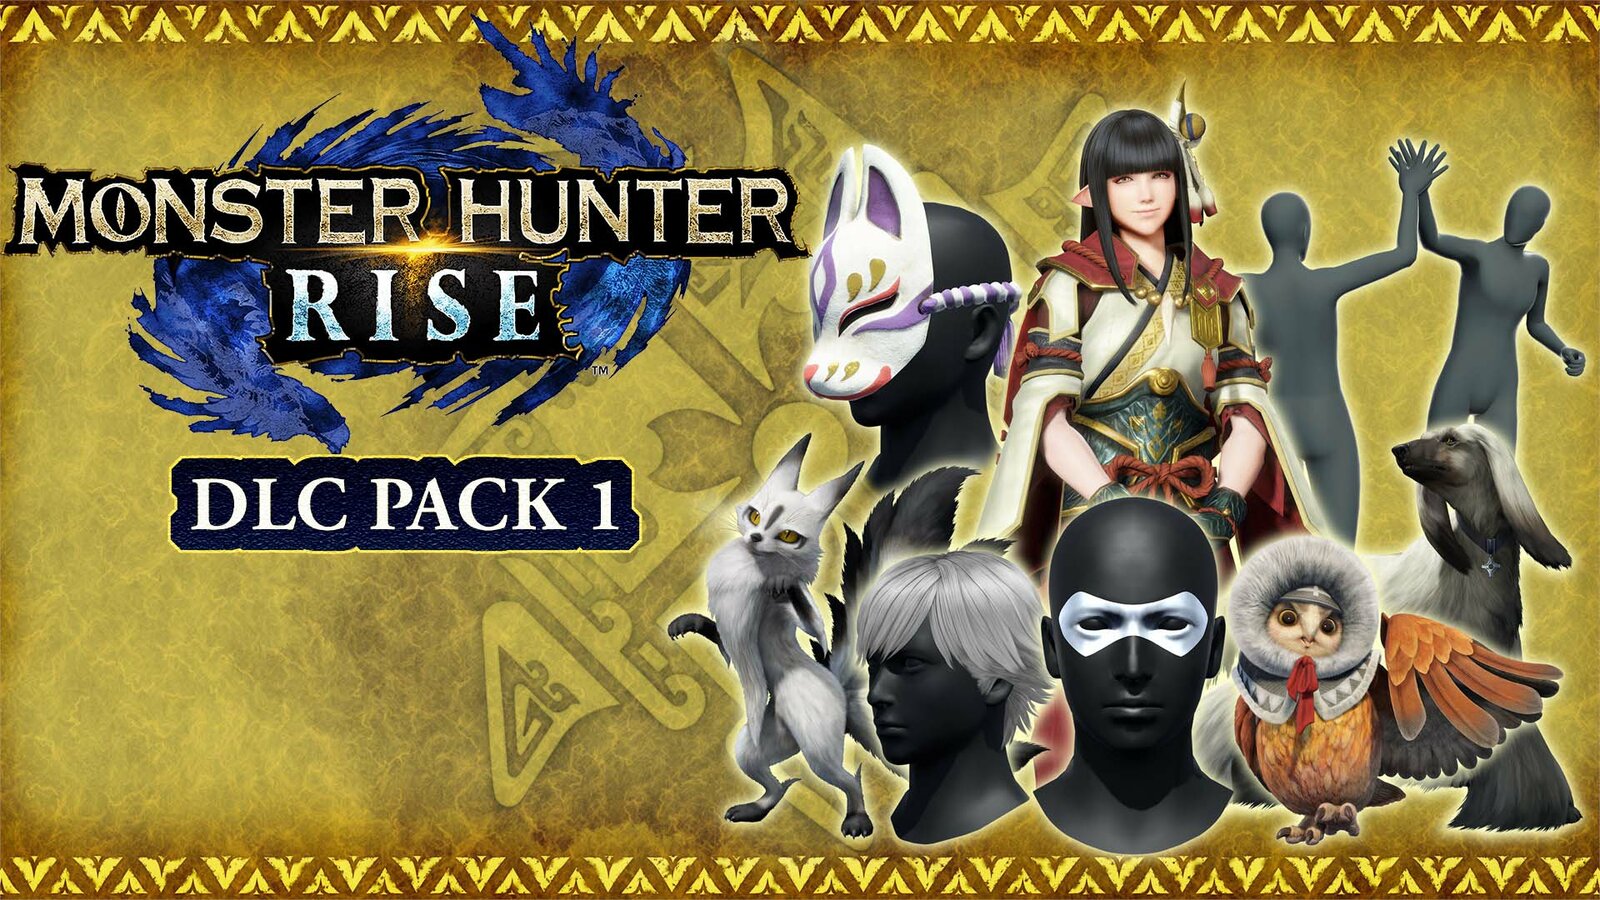 Monster Hunter: Rise DLC Pack 1